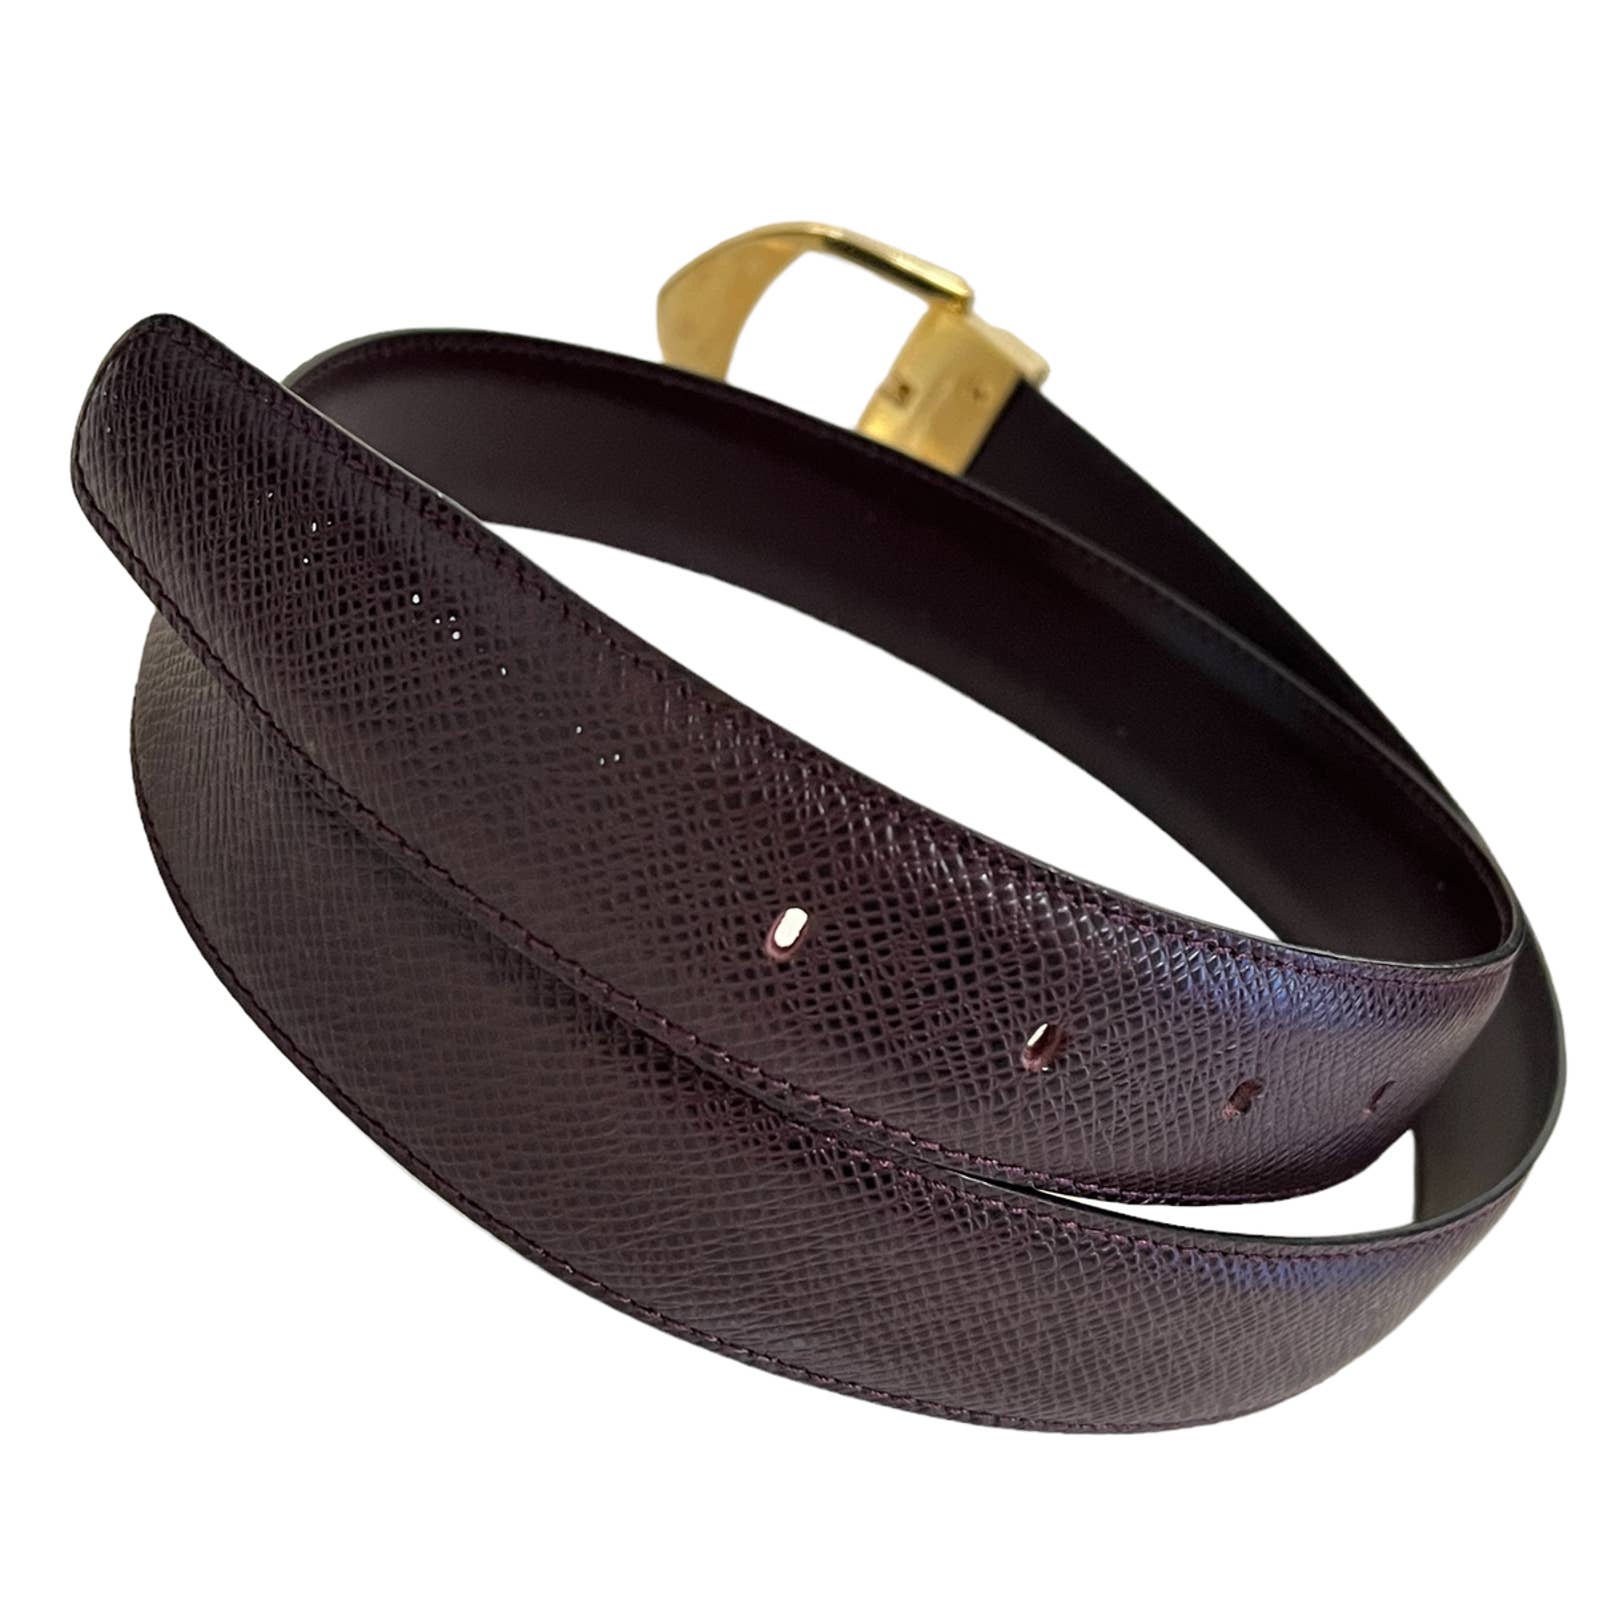 Louis Vuitton - Fuchsia Vernis Leather Gold Emblem Buckle Belt